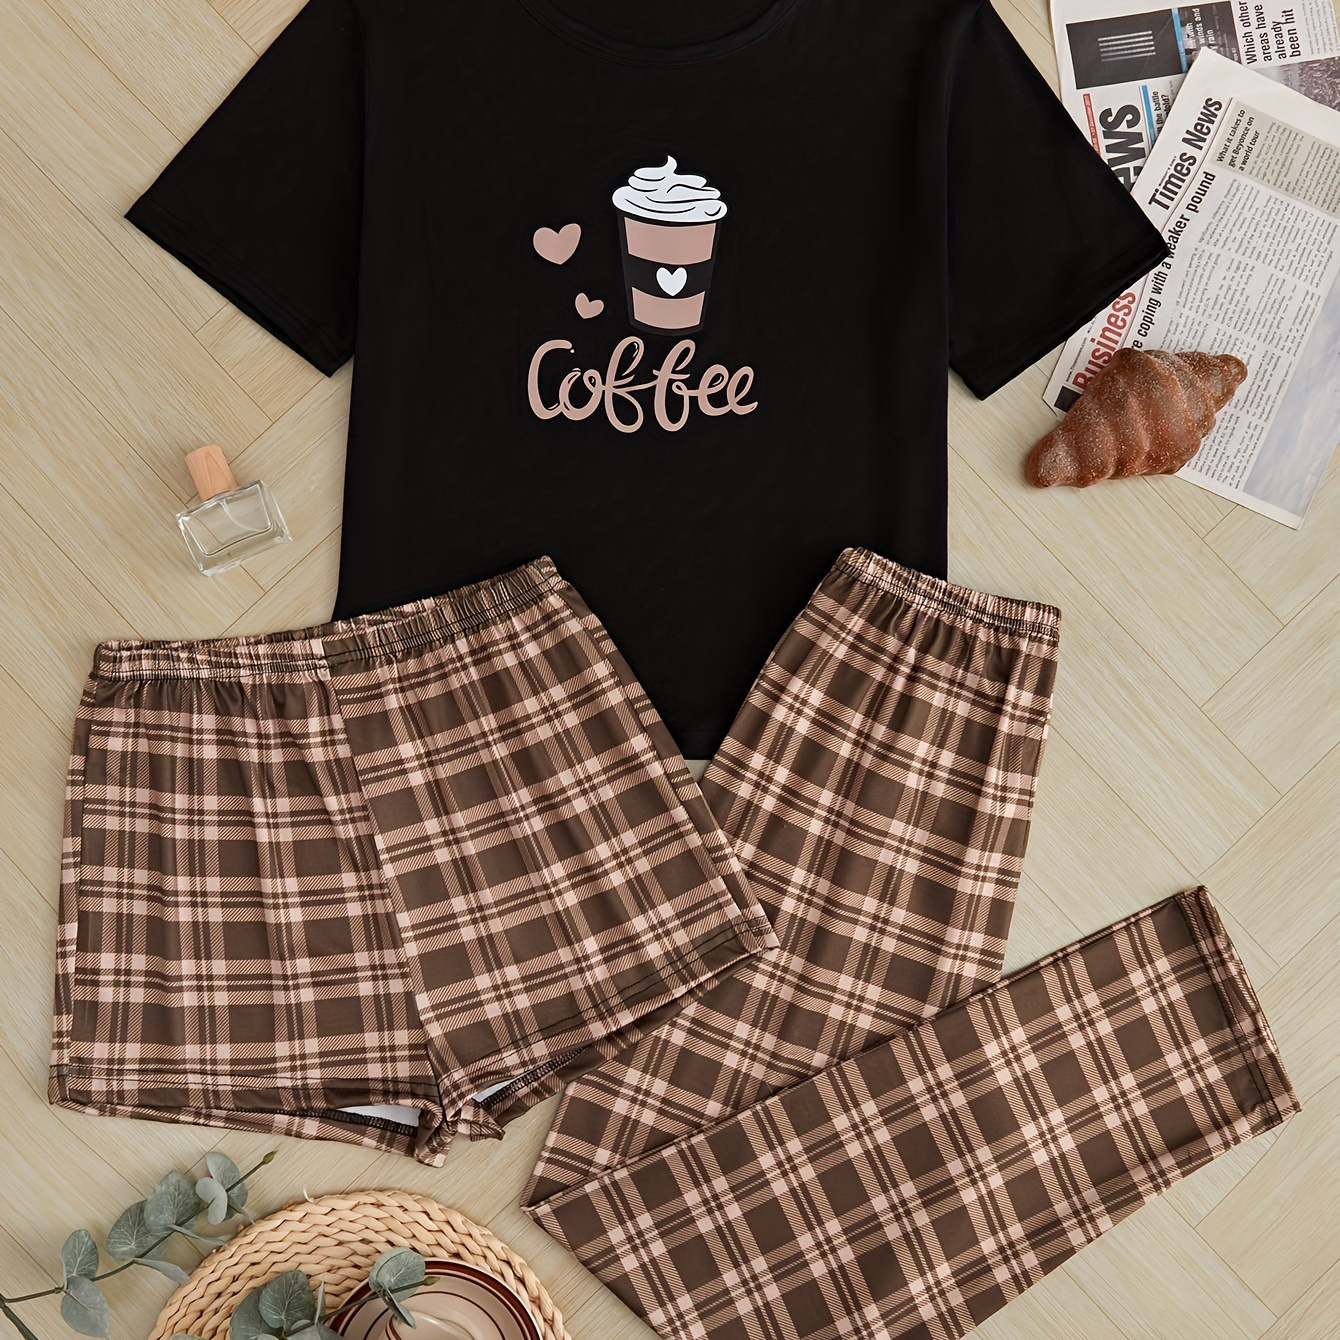 Cute Coffee Print Pajamas Set, Short Sleeve Tee Top And Pants Pj Set,  Women's Sleepwear & Loungewear